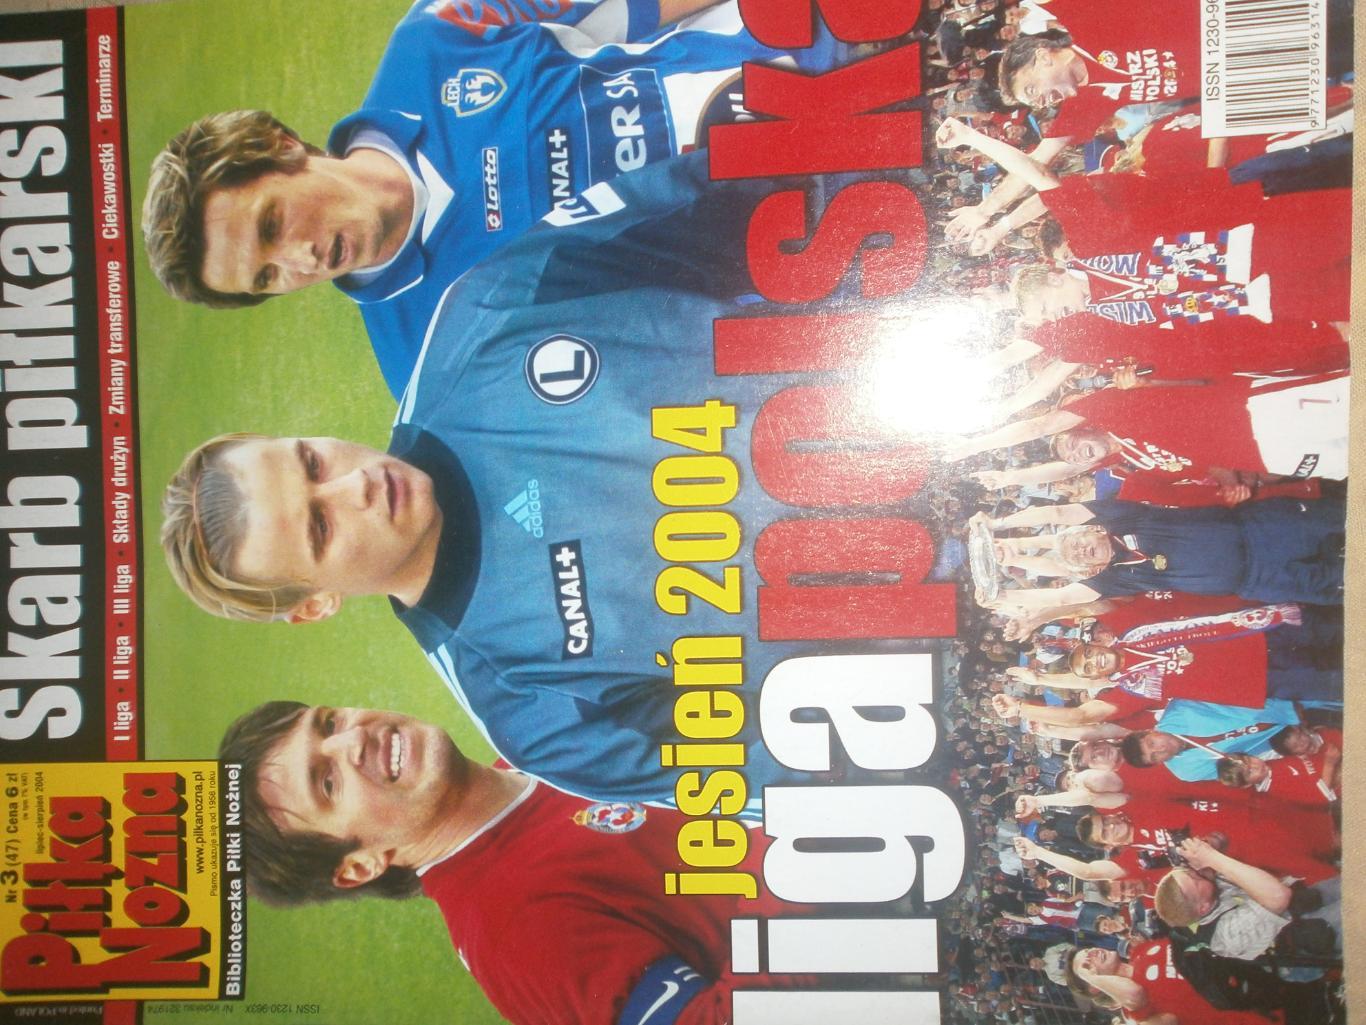 Журнал Лига полска 2004г.88с. Есть постеры команд на стр. А-4